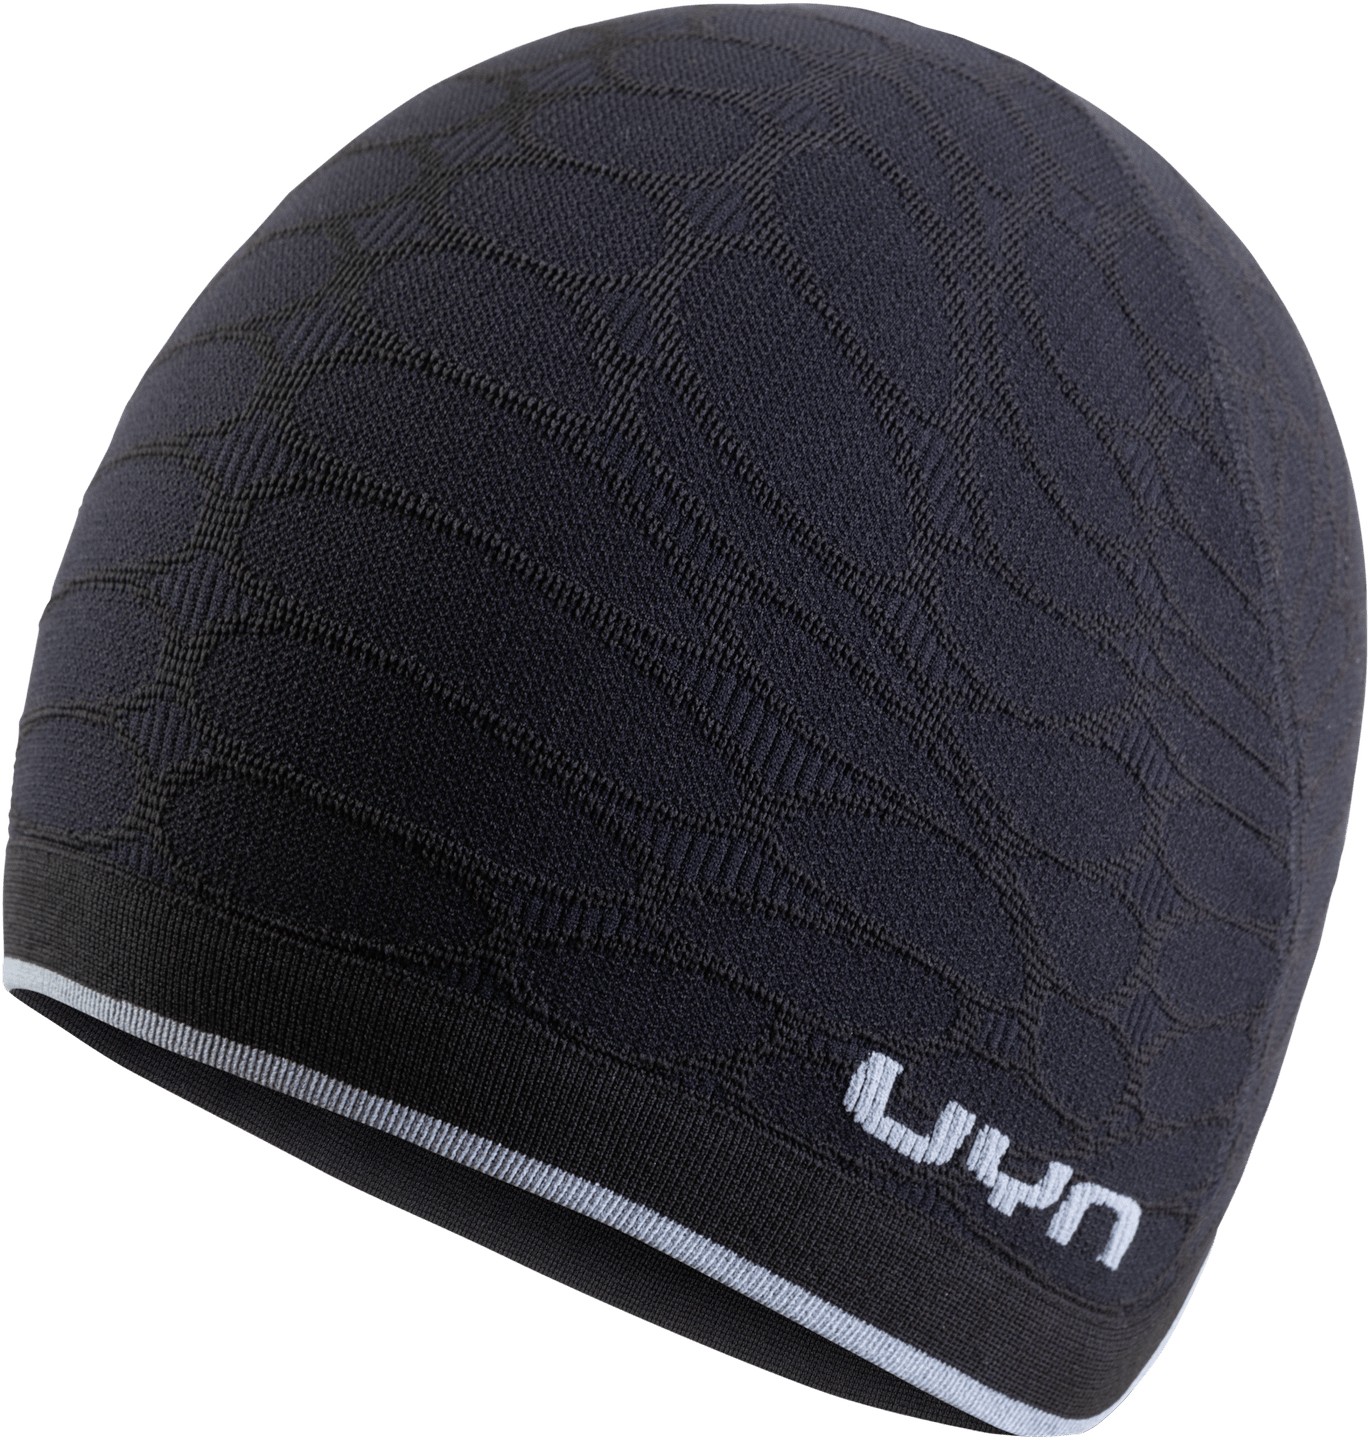 Uyn biking unisex under helmet bonnet blackboard noir gris